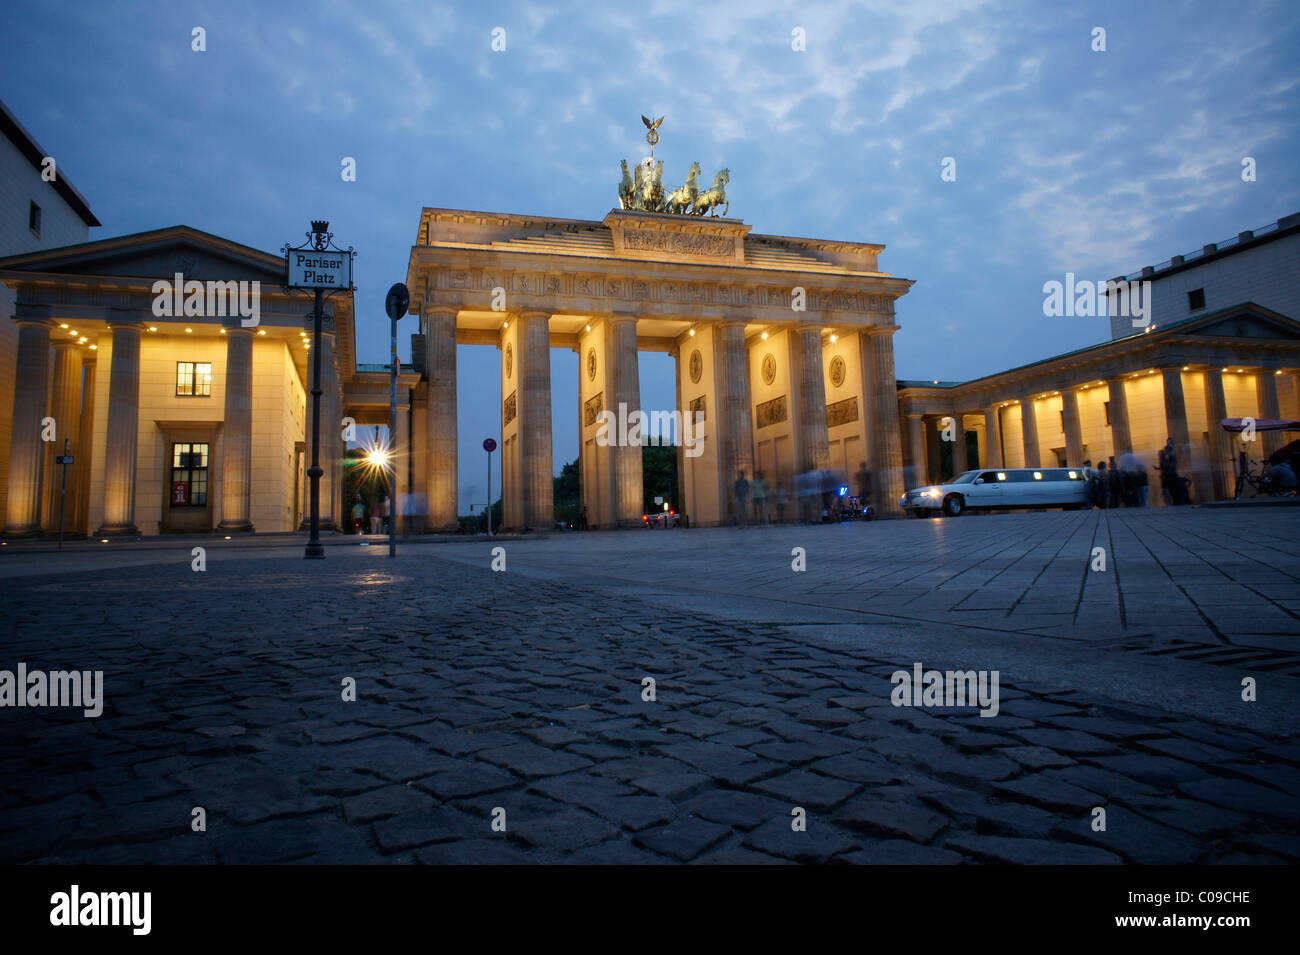 Al atardecer, la Puerta de Brandenburgo en Berlín, Alemania, Europa Foto de stock